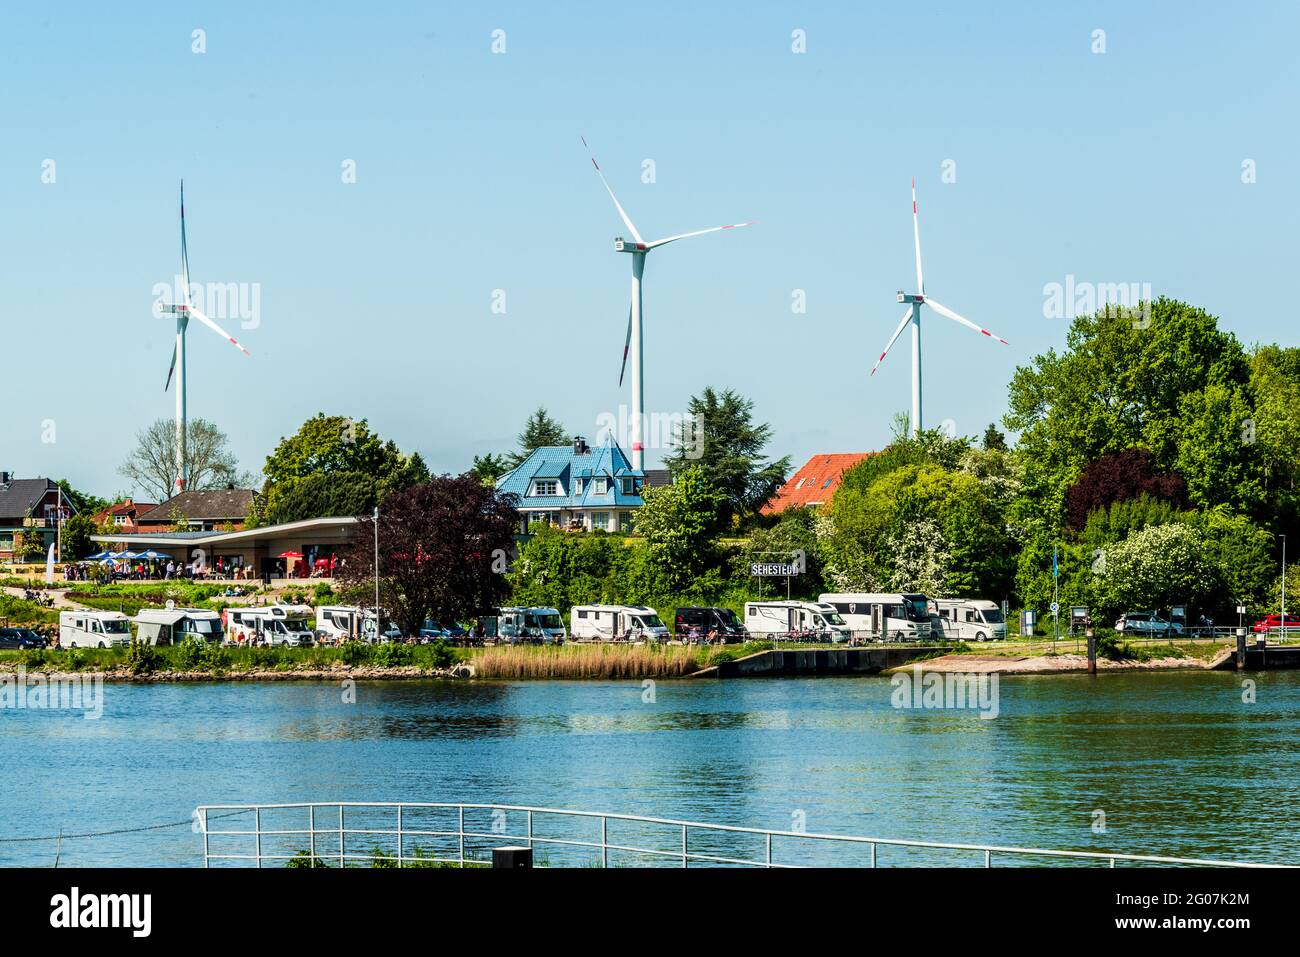 Ein Touristische Highlight am Nord-Ostsee-Kanal die Kanalfähre Sehestedt. Der Wohnwagenparkplatz am Ausflugslokal lockt Touristen an, um die hier pas Foto Stock